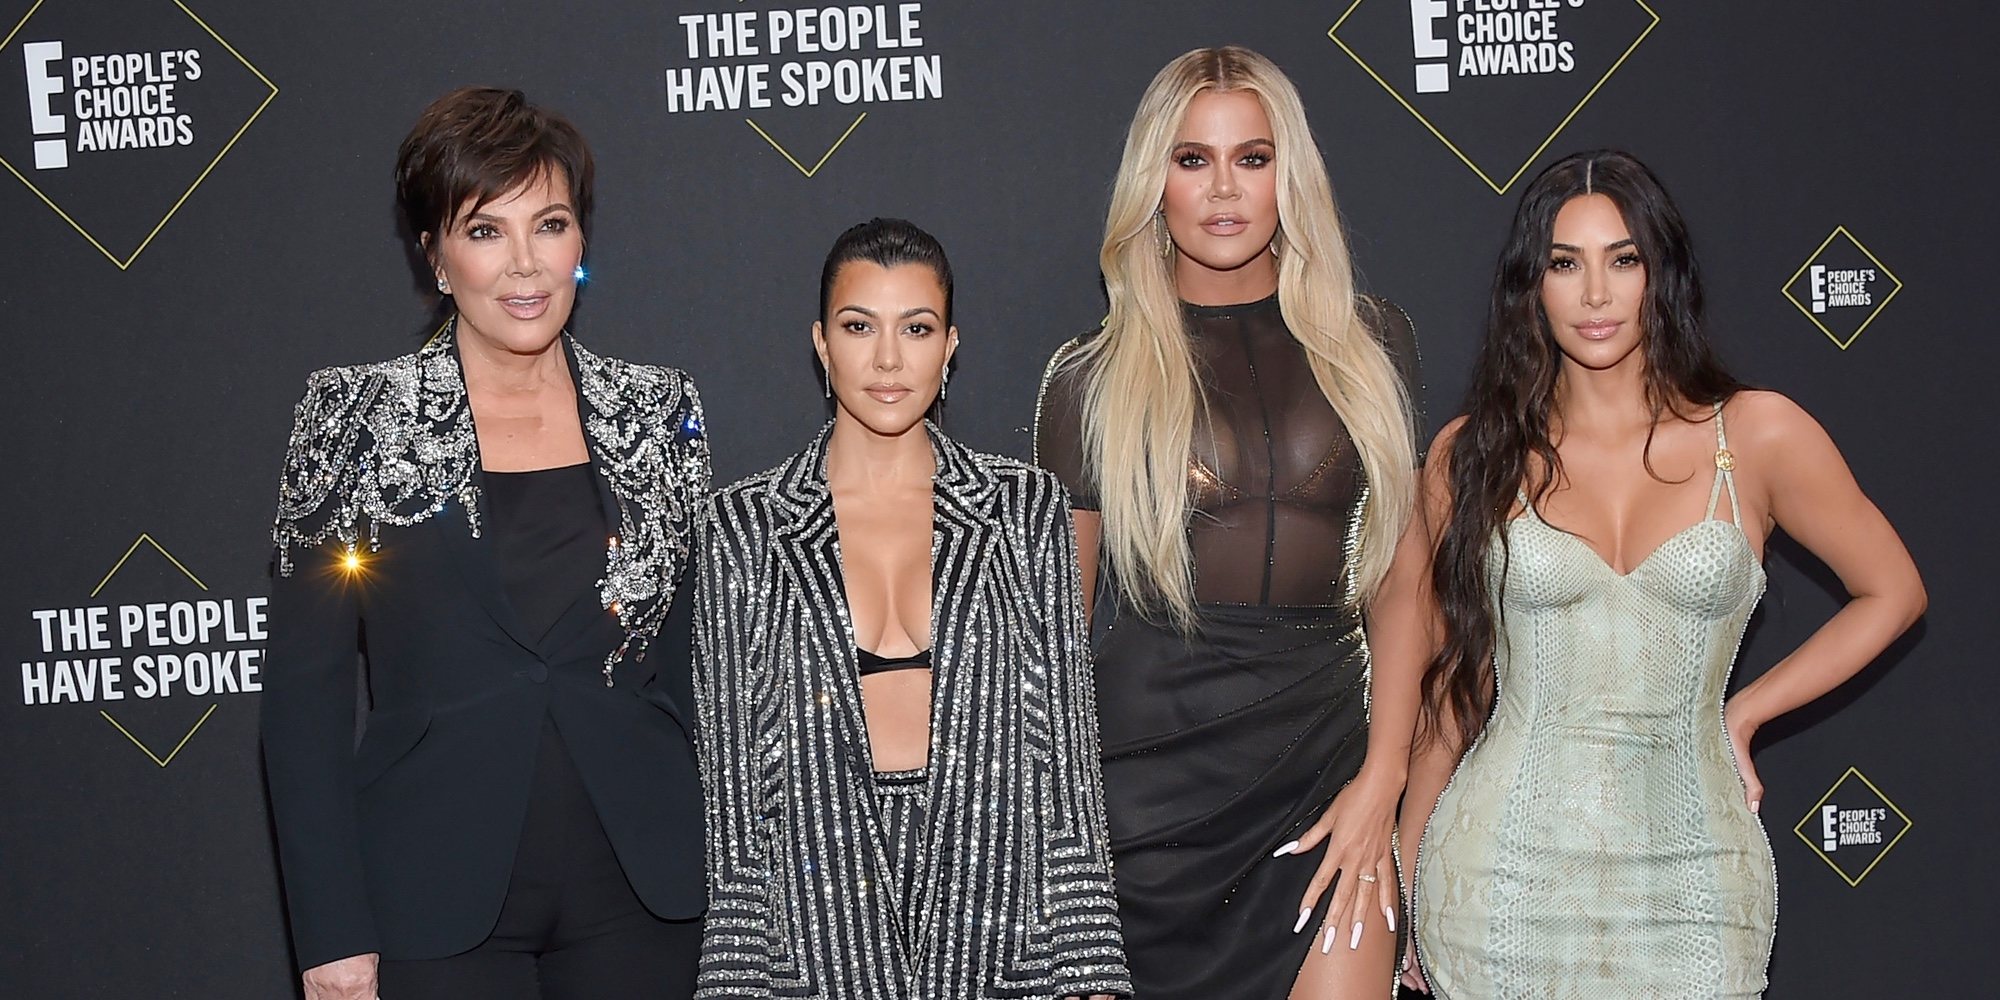 La explicación de Khloe Kardashian al desplante a sus fans en los People's Choice Awards 2019